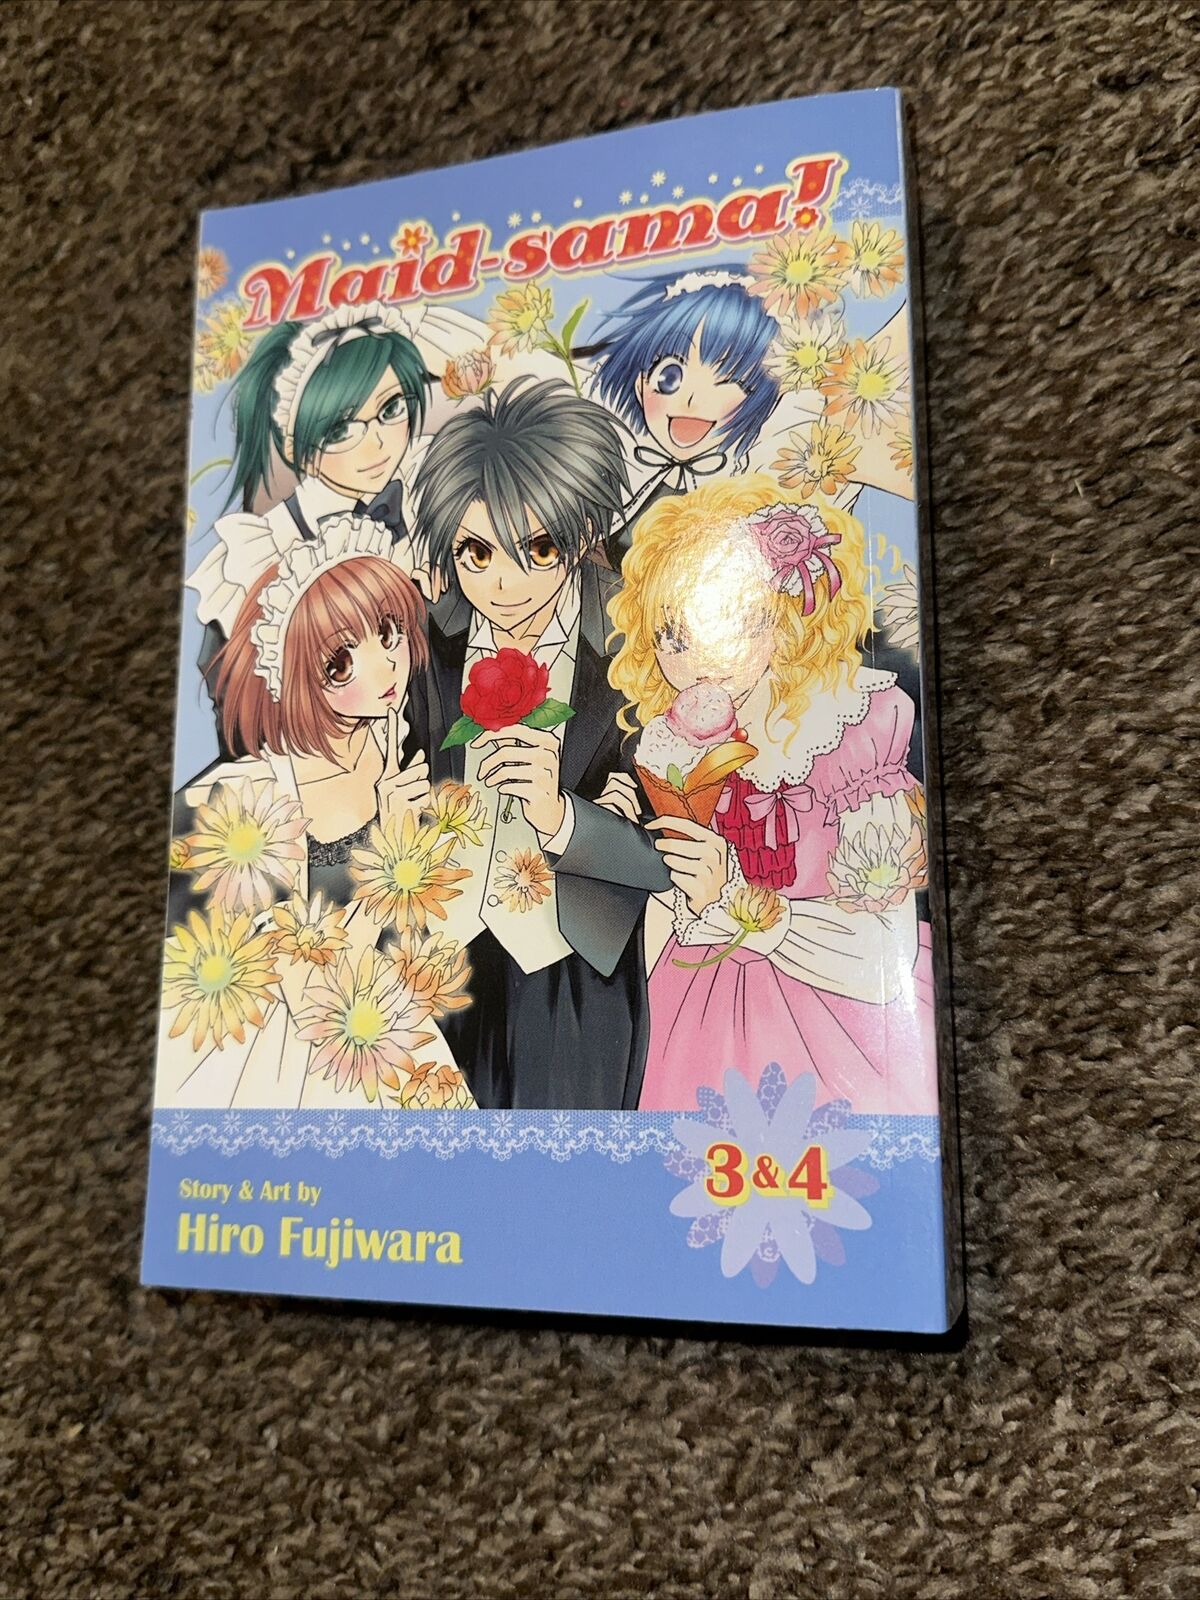 Maid Sama Manga 2 in 1: Volumes 3 & 4